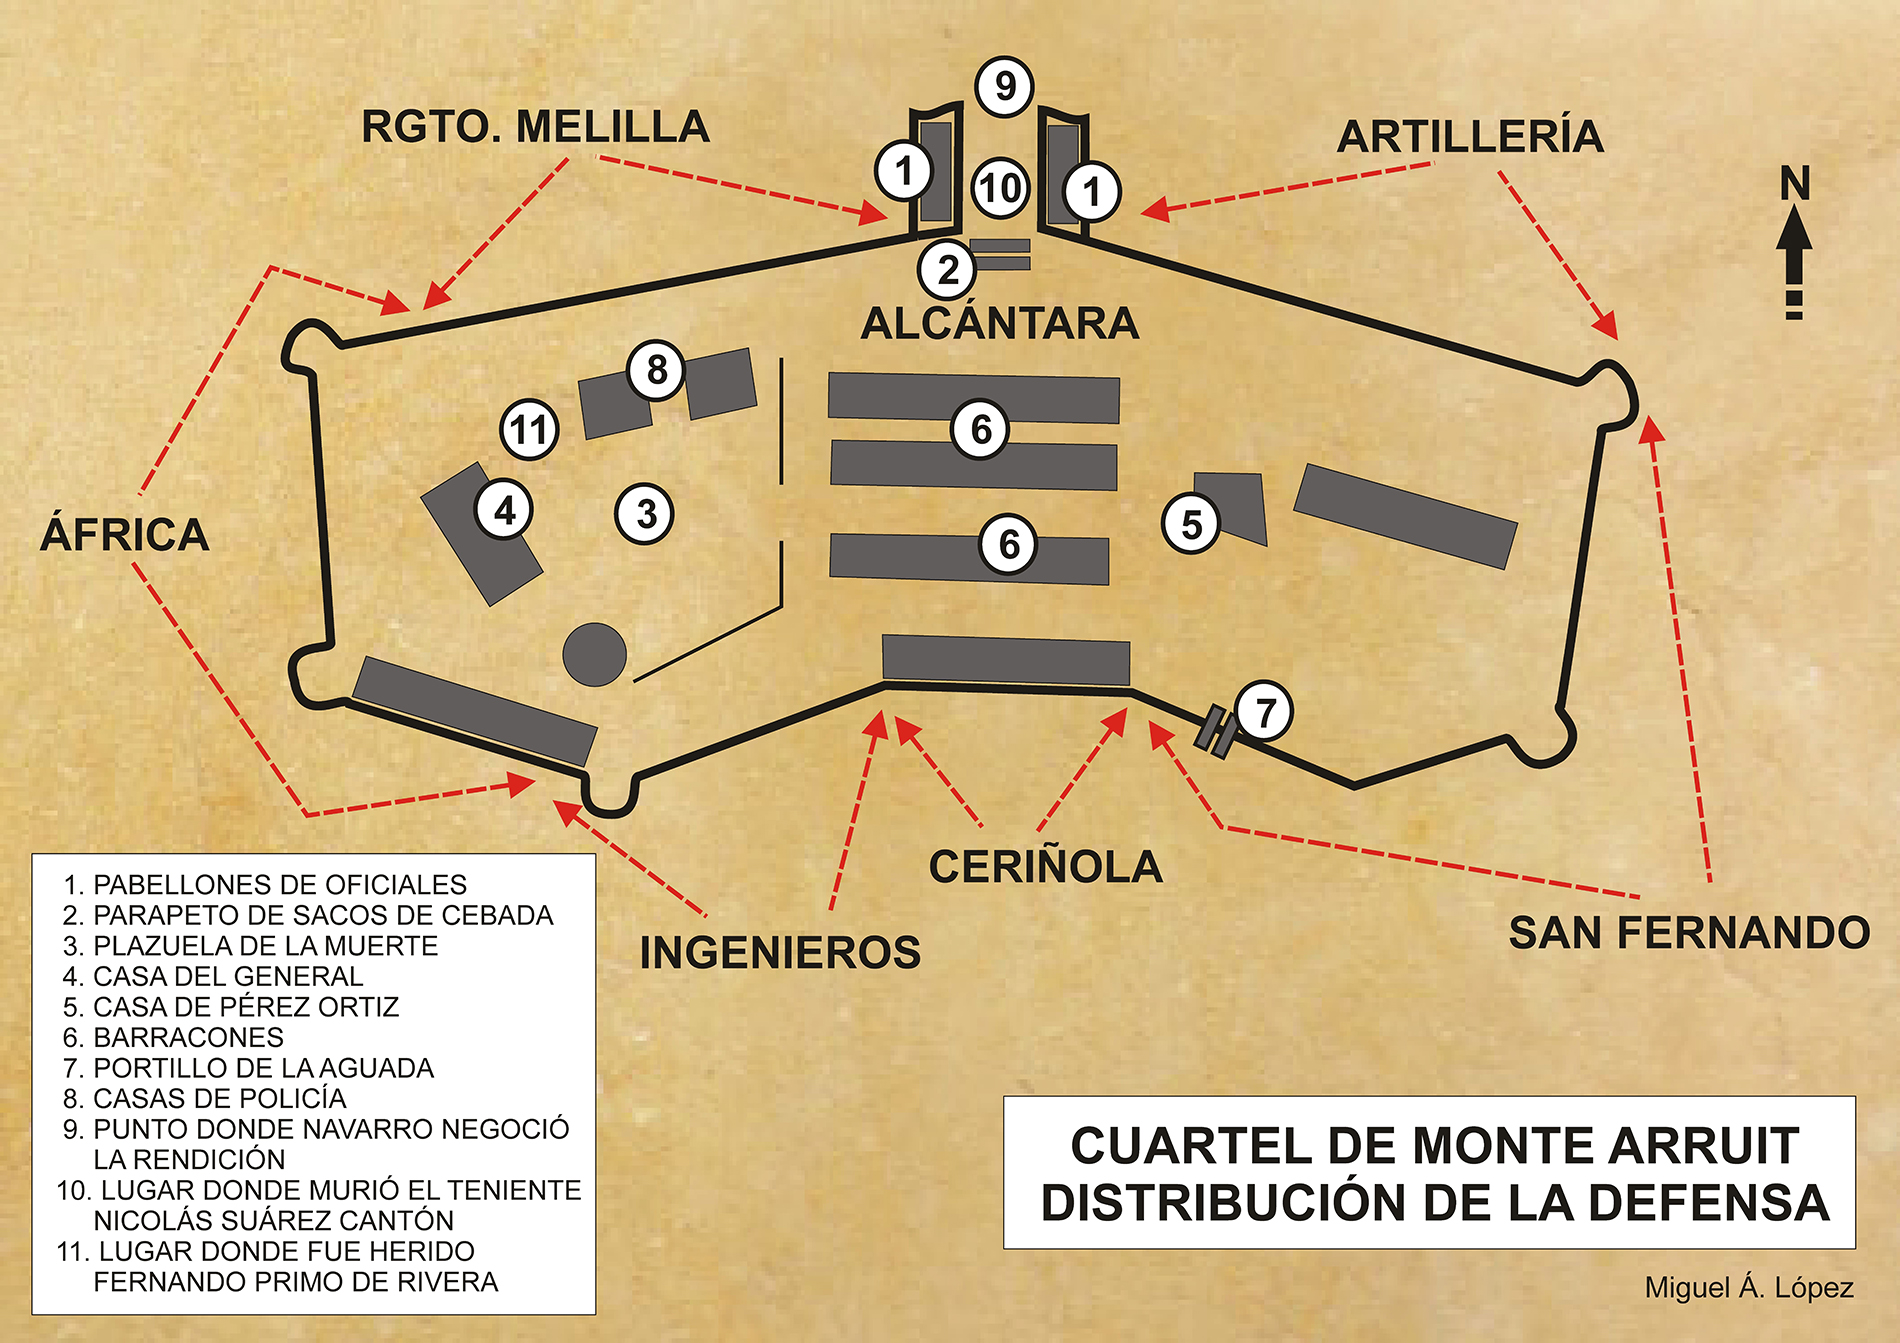 Mapa que muestra la distribución de la defensa en el cuartel de Monte Arruit